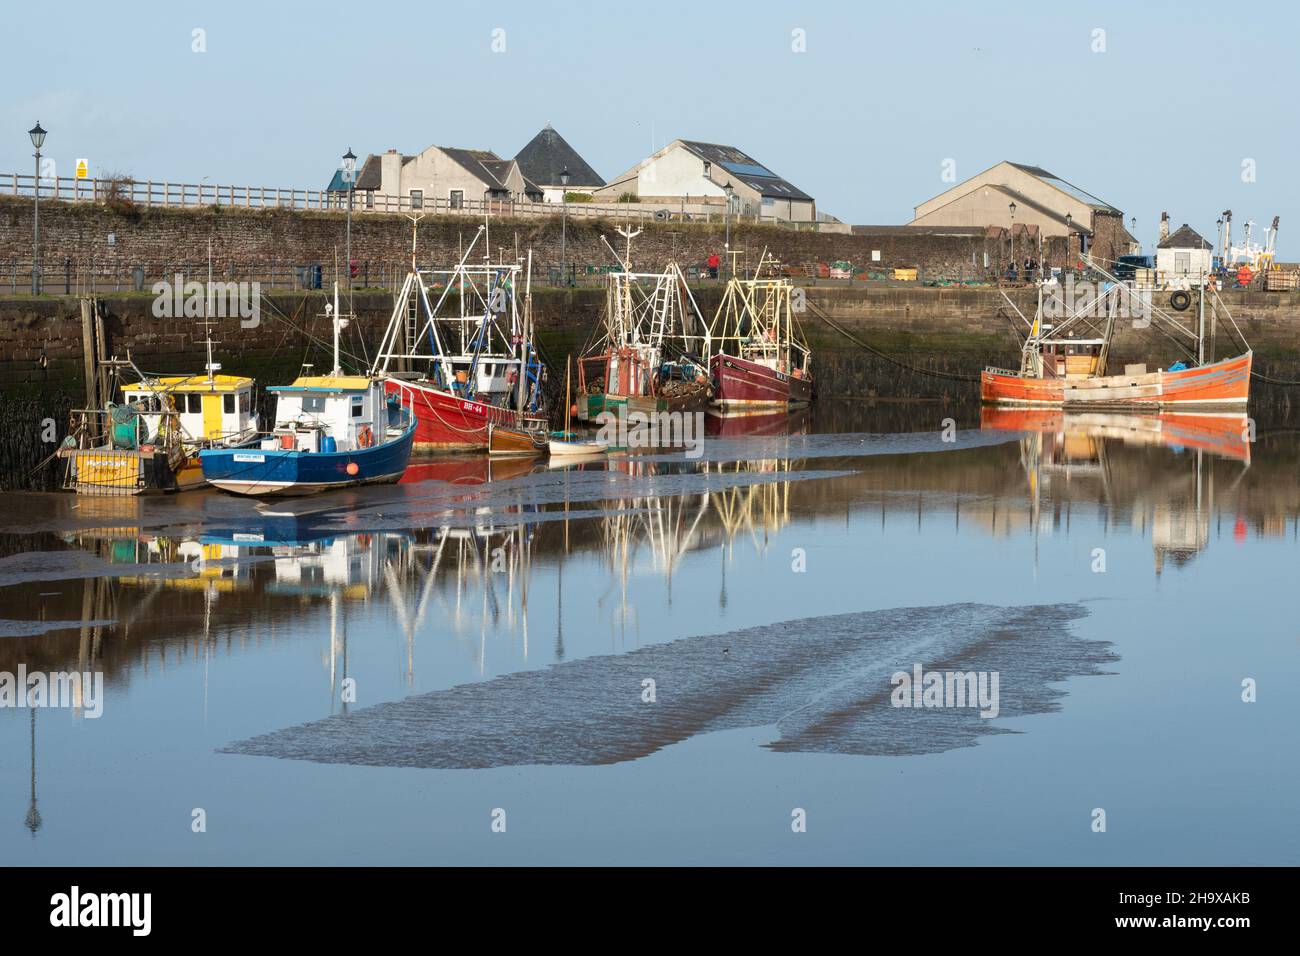 Bateaux de pêche colorés dans le port de Maryport, une jolie ville côtière de Cumbria, Angleterre, Royaume-Uni Banque D'Images